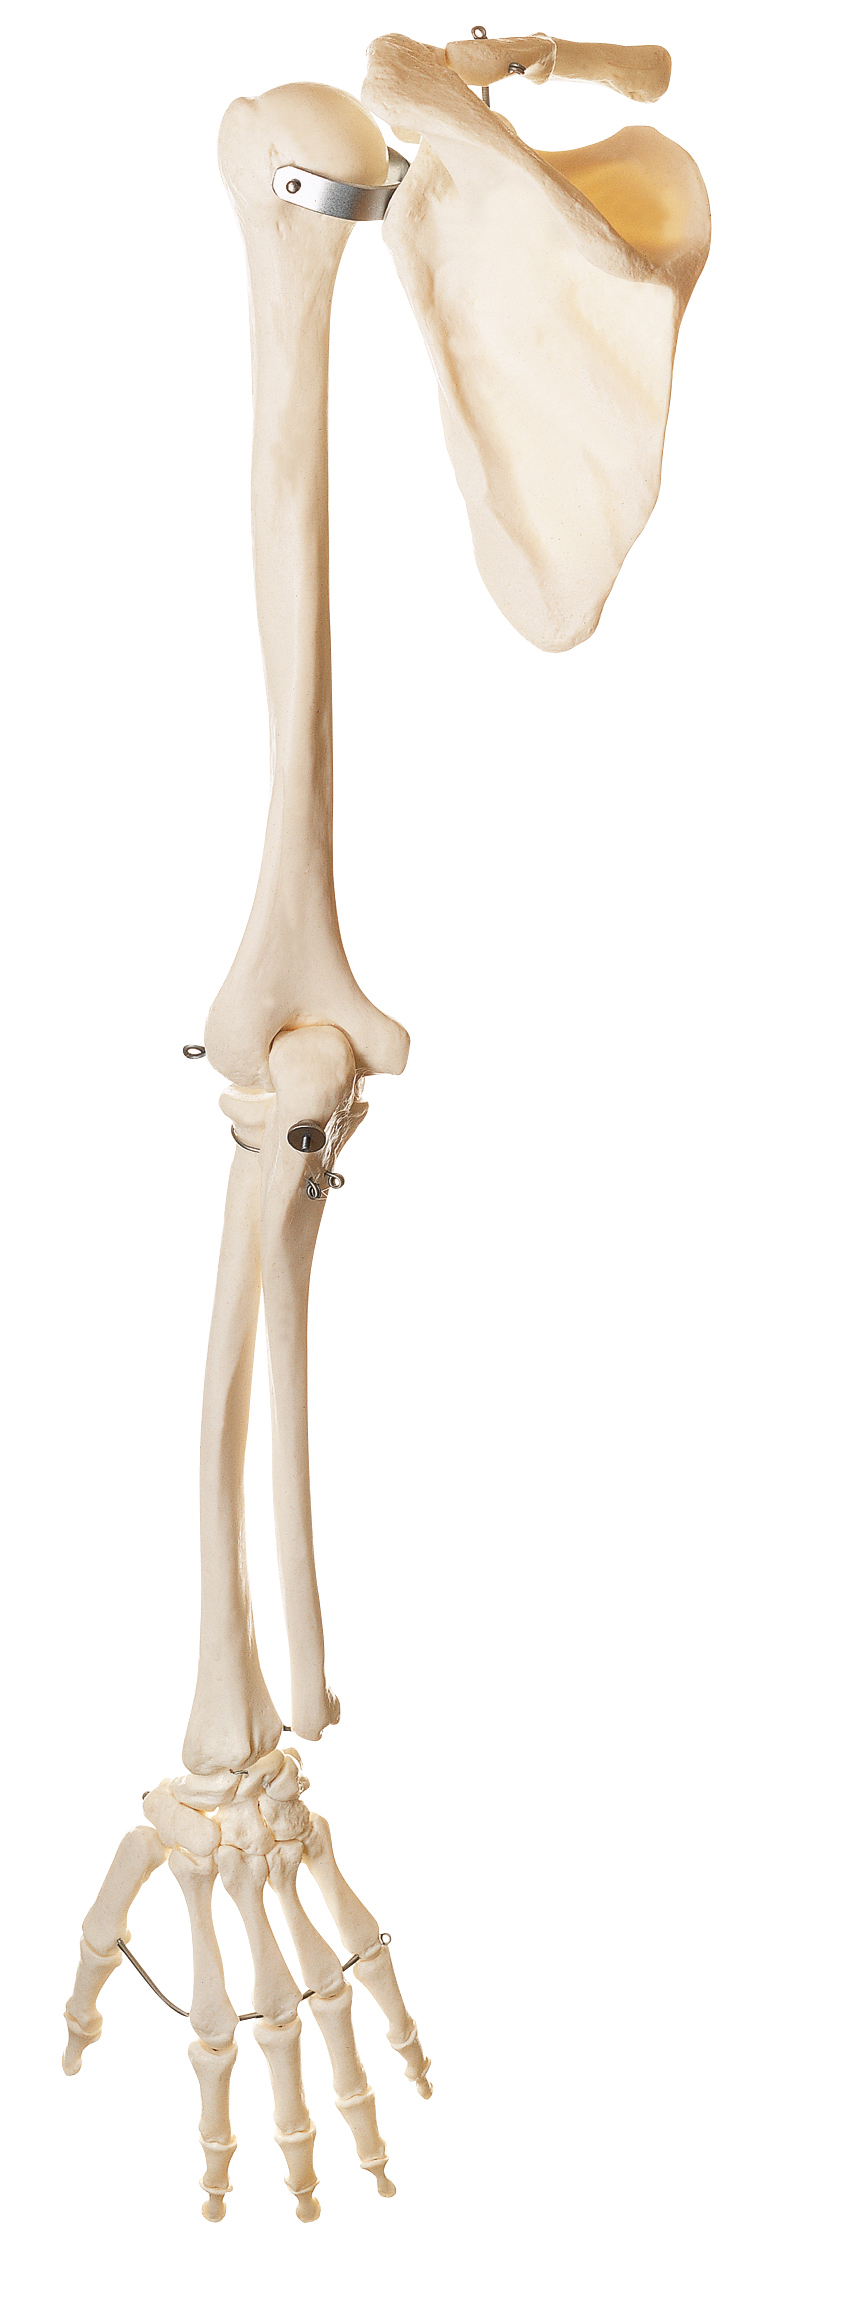 Skeleton of the Arm with Shoulder Girdle, Bone Models